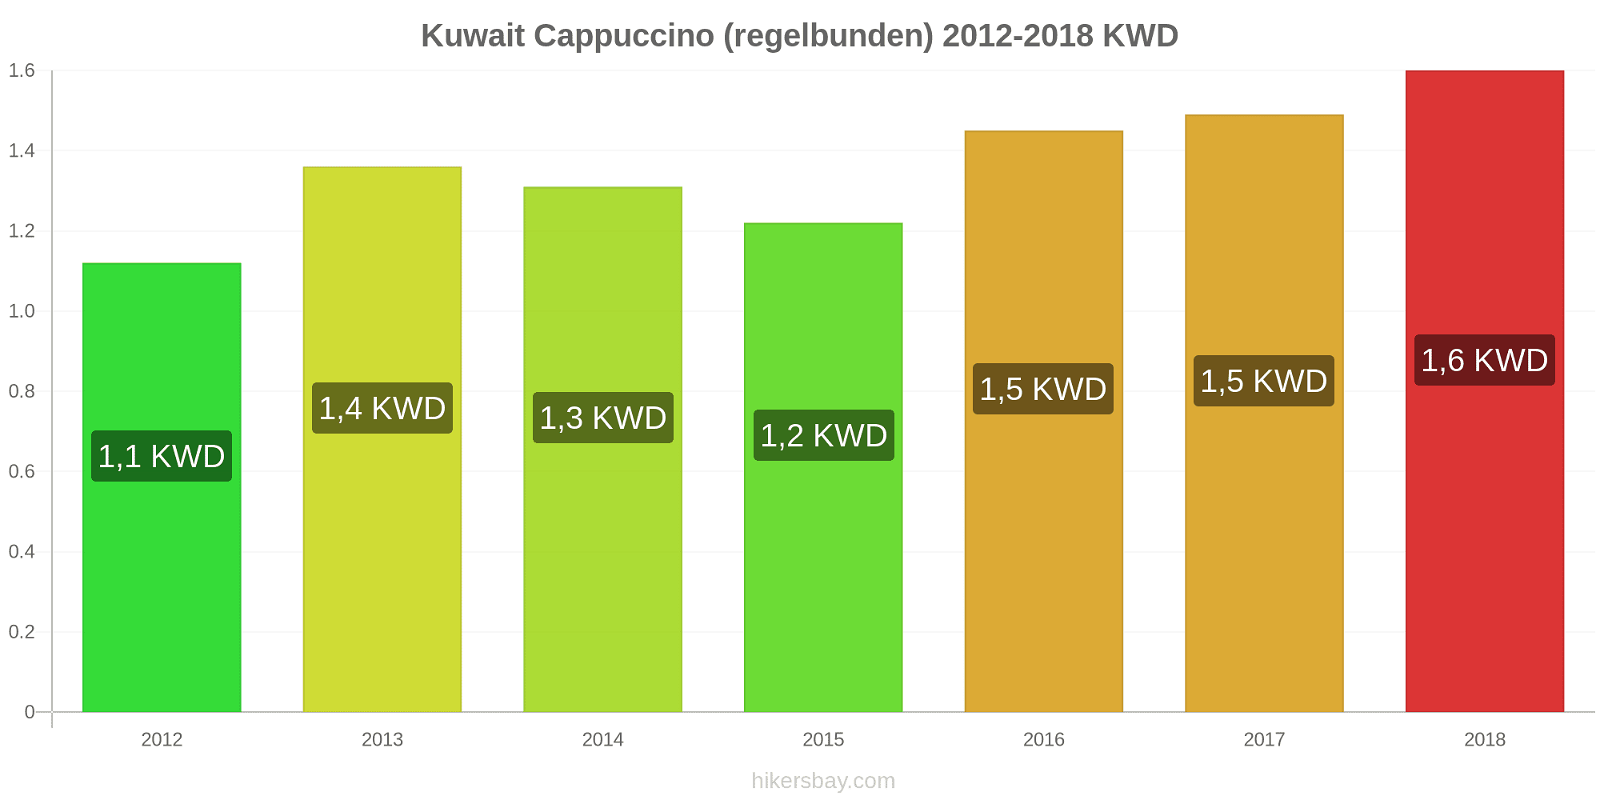 Kuwait prisändringar Cappuccino hikersbay.com